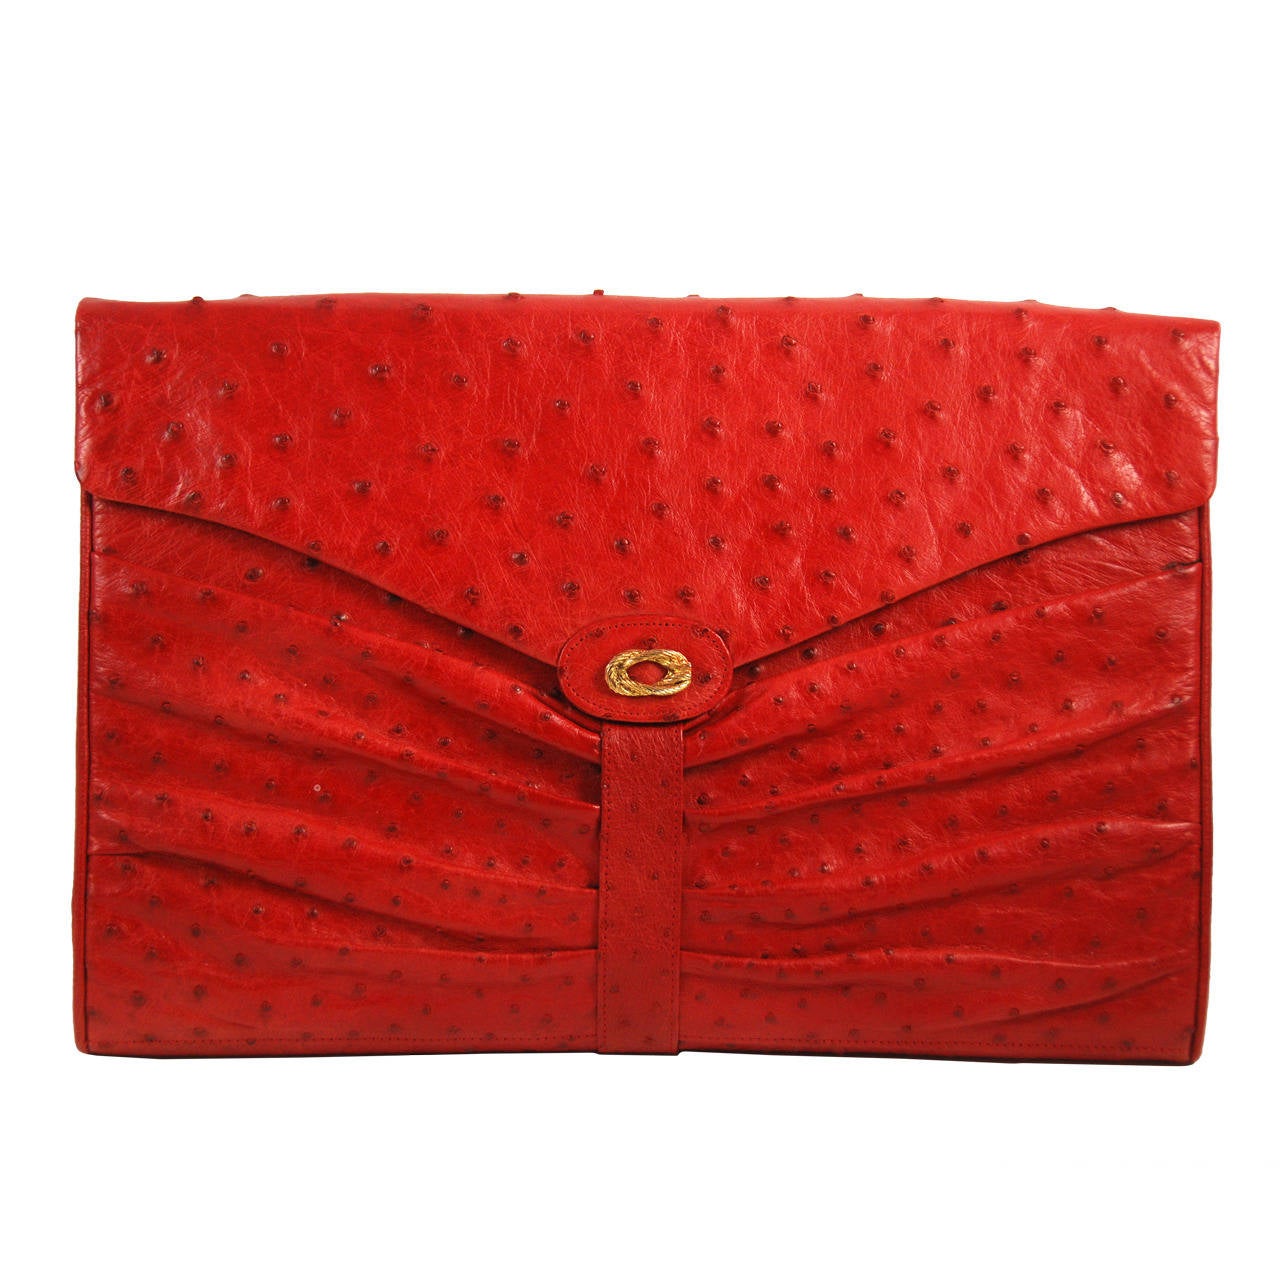 1980s Red Ostrich Large Clutch/Shoulder Bag For Sale